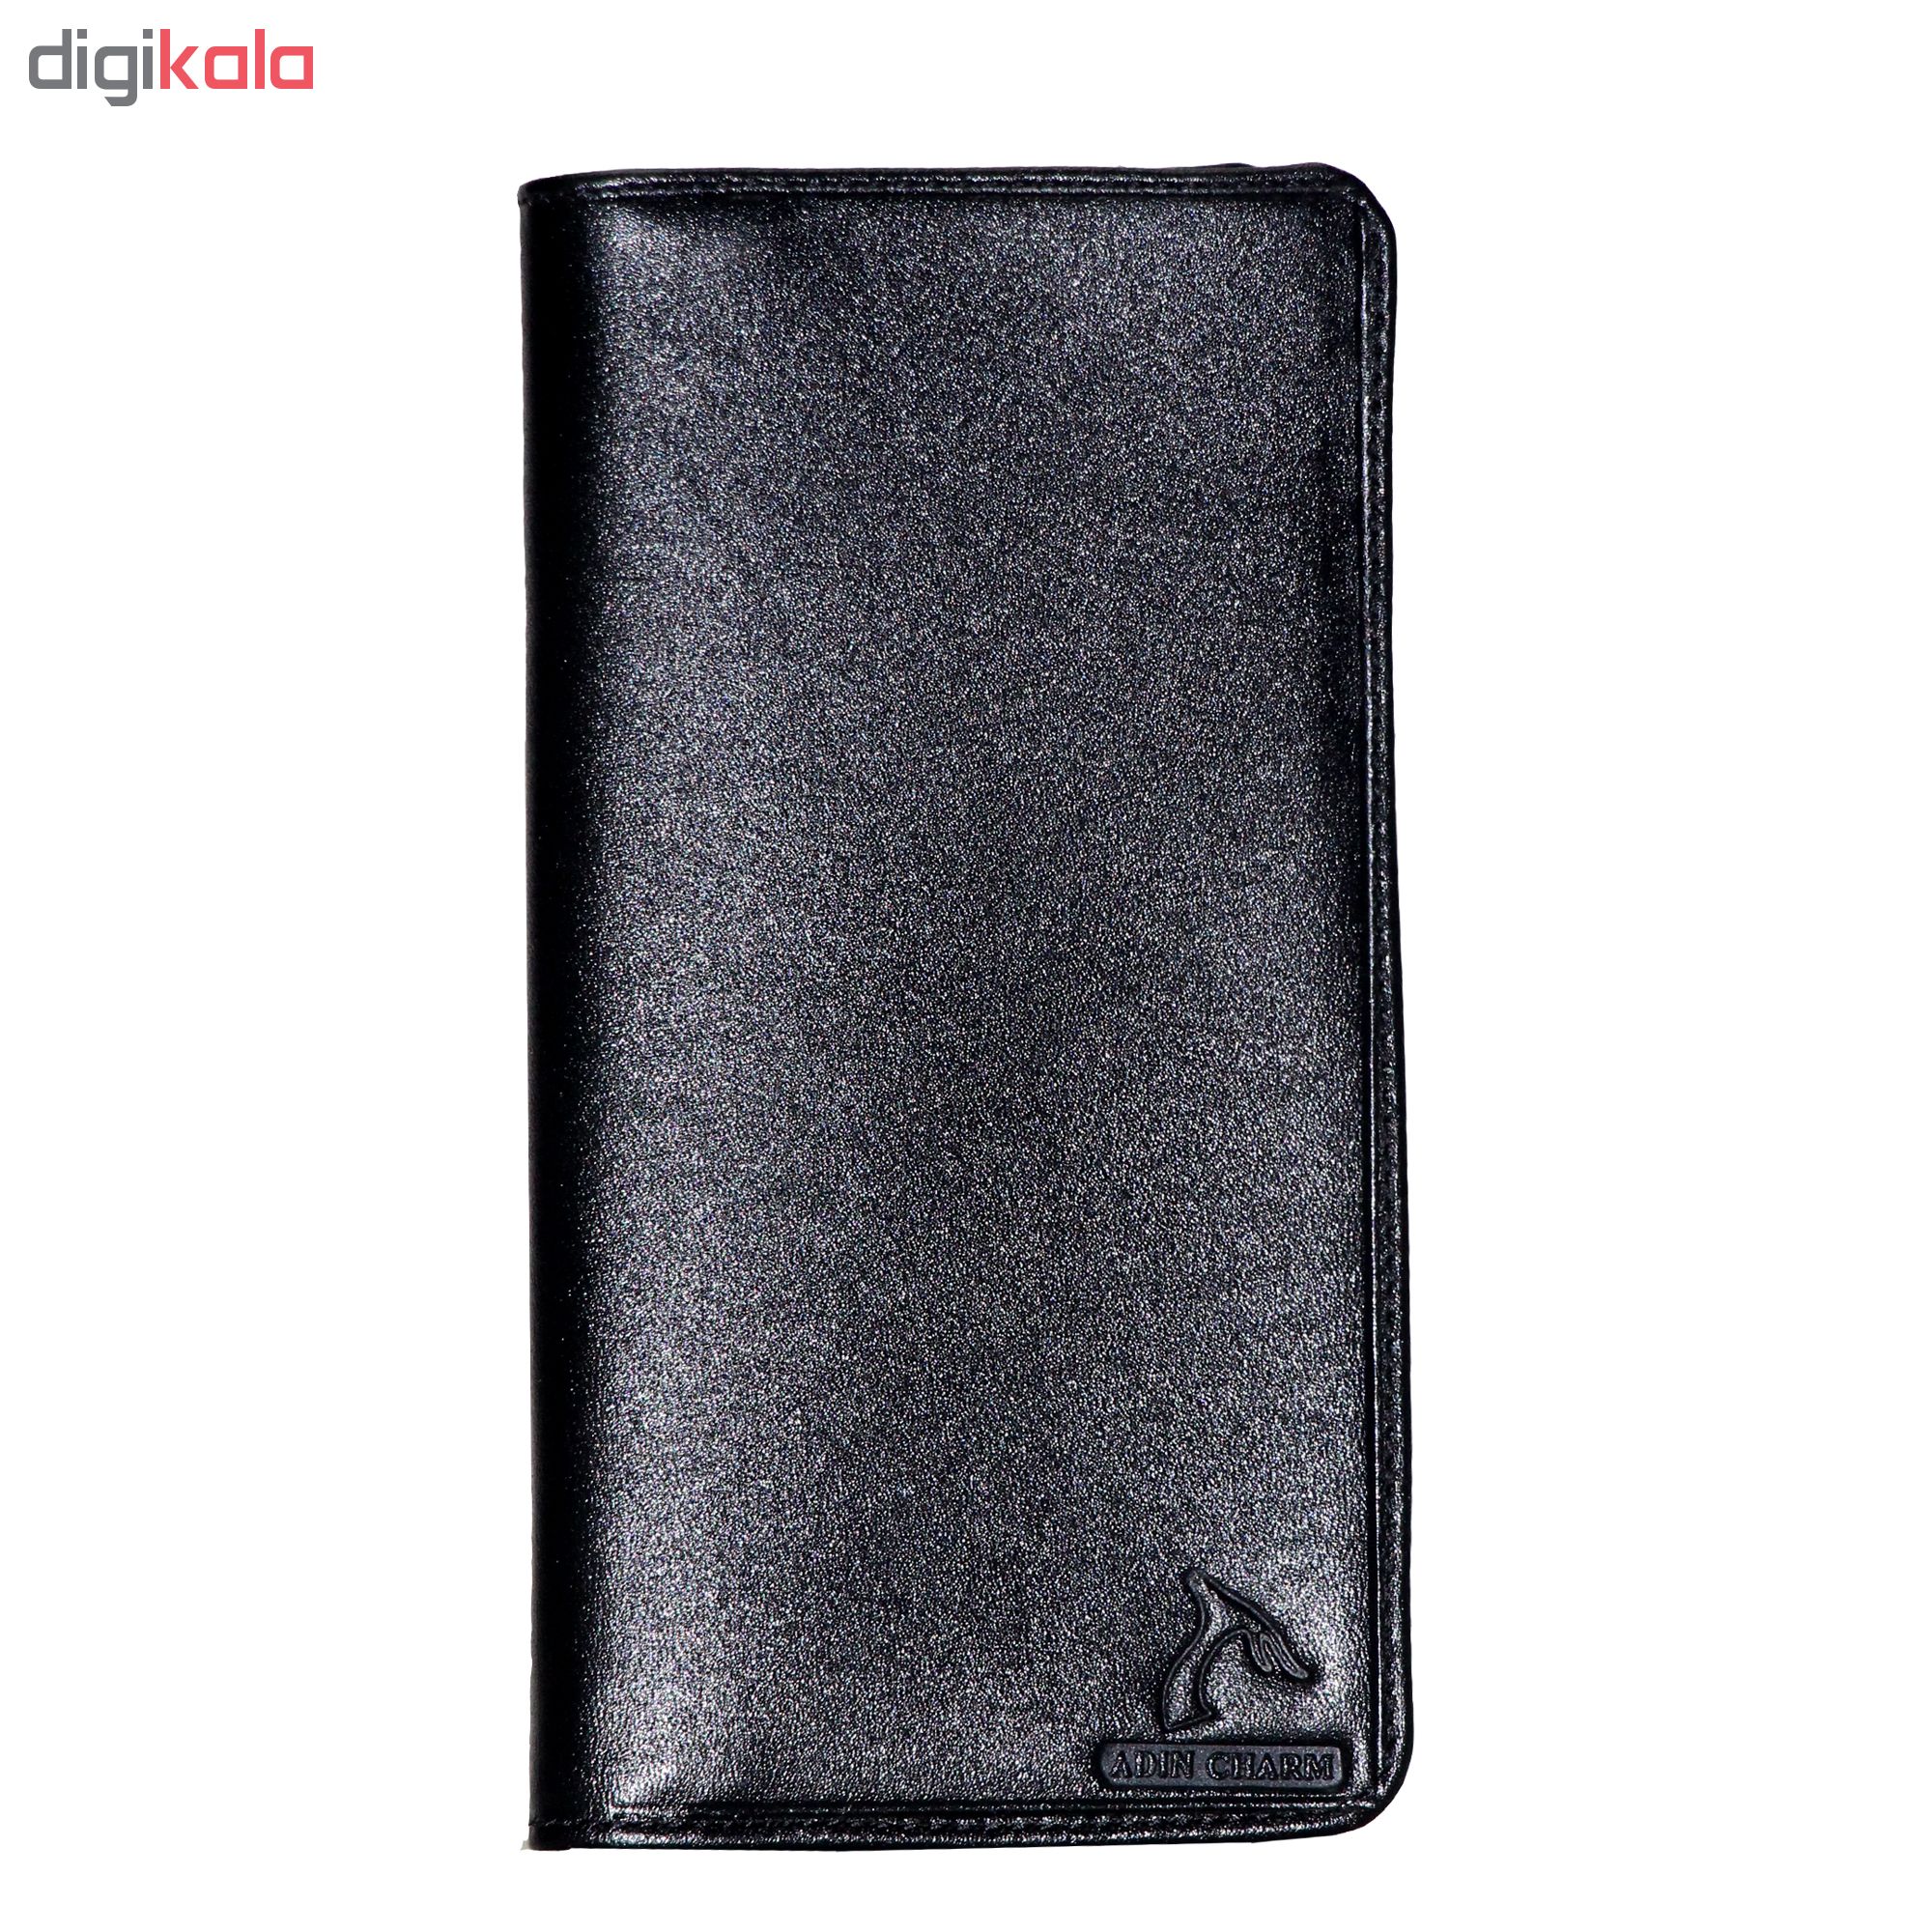 ADINCHARM natural leather wallet, DM63 Model